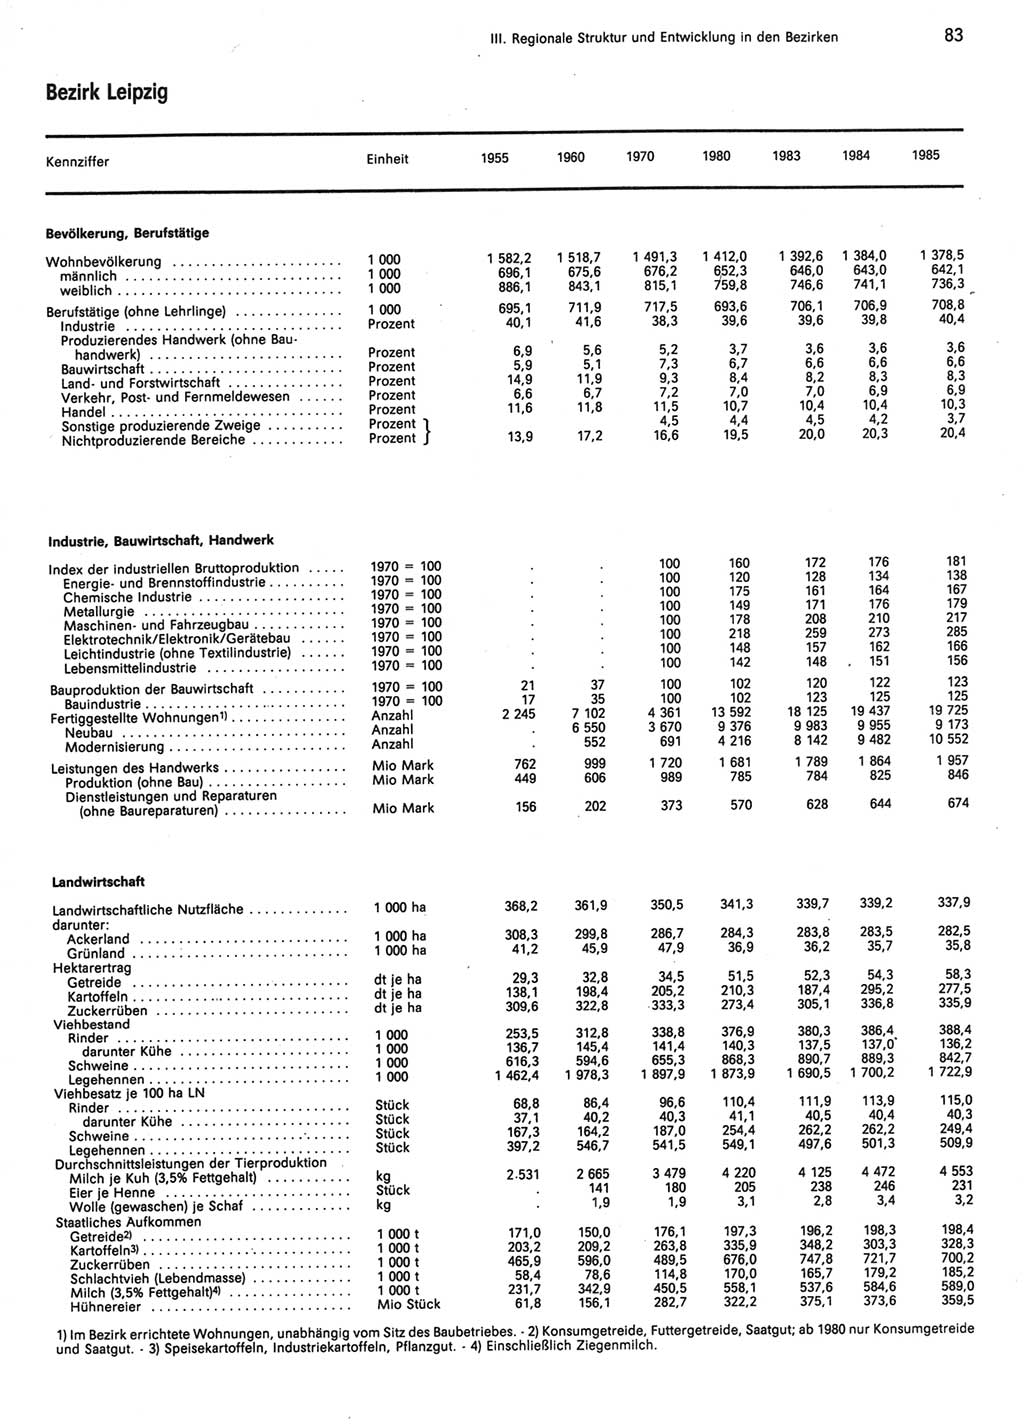 Statistisches Jahrbuch der Deutschen Demokratischen Republik (DDR) 1986, Seite 83 (Stat. Jb. DDR 1986, S. 83)